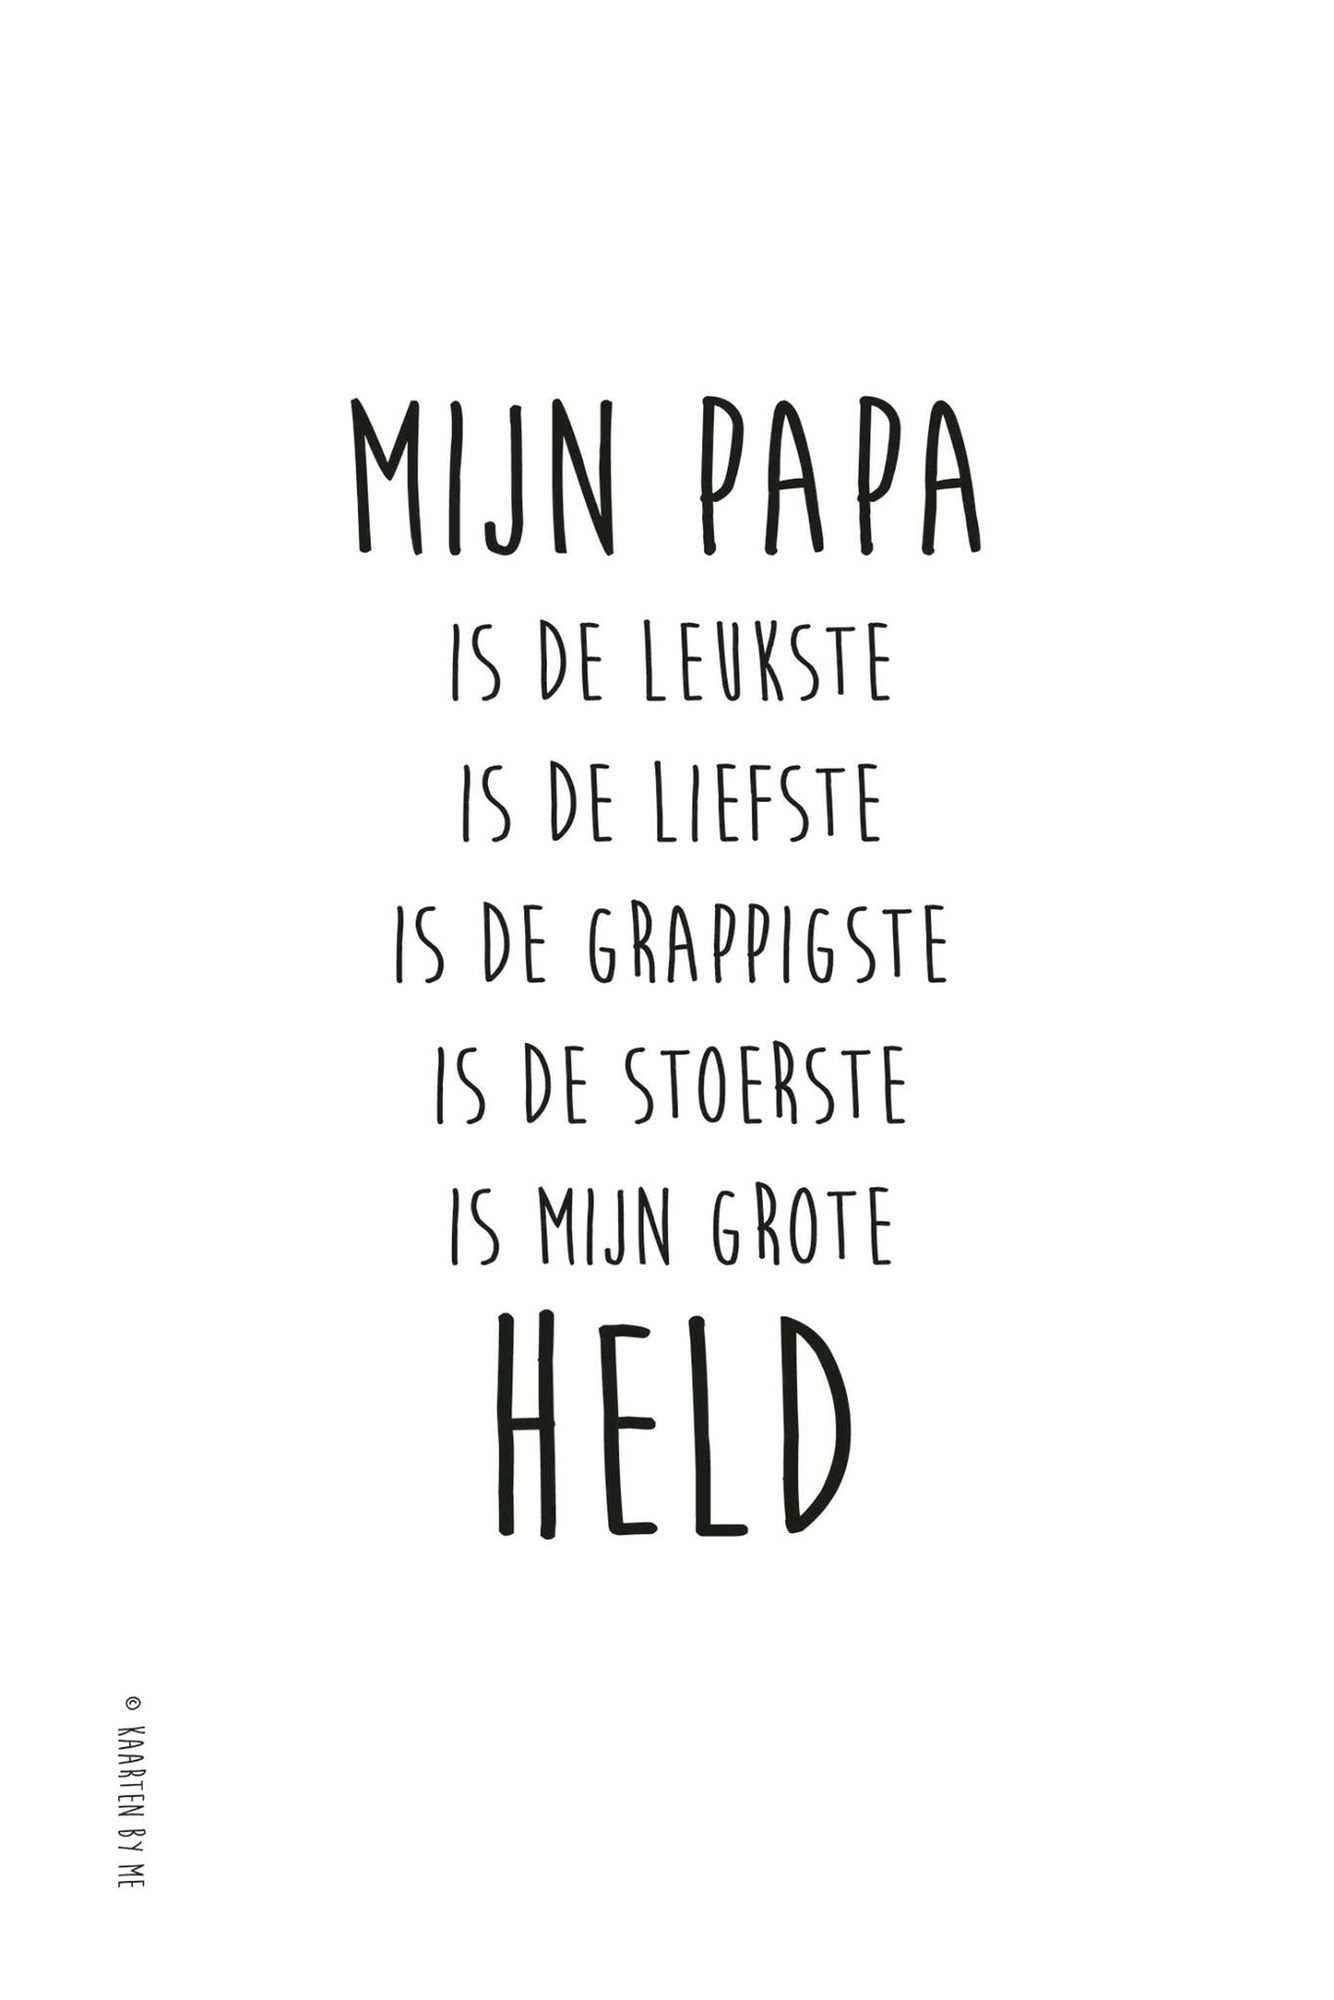 Ina Tax - Verkerk בטוויטר: "Al 15 jaar uit ons midden; hou van je Papa en mis  je elke dag. Ik hoop dat je trots bent op mij. #love #papa… "